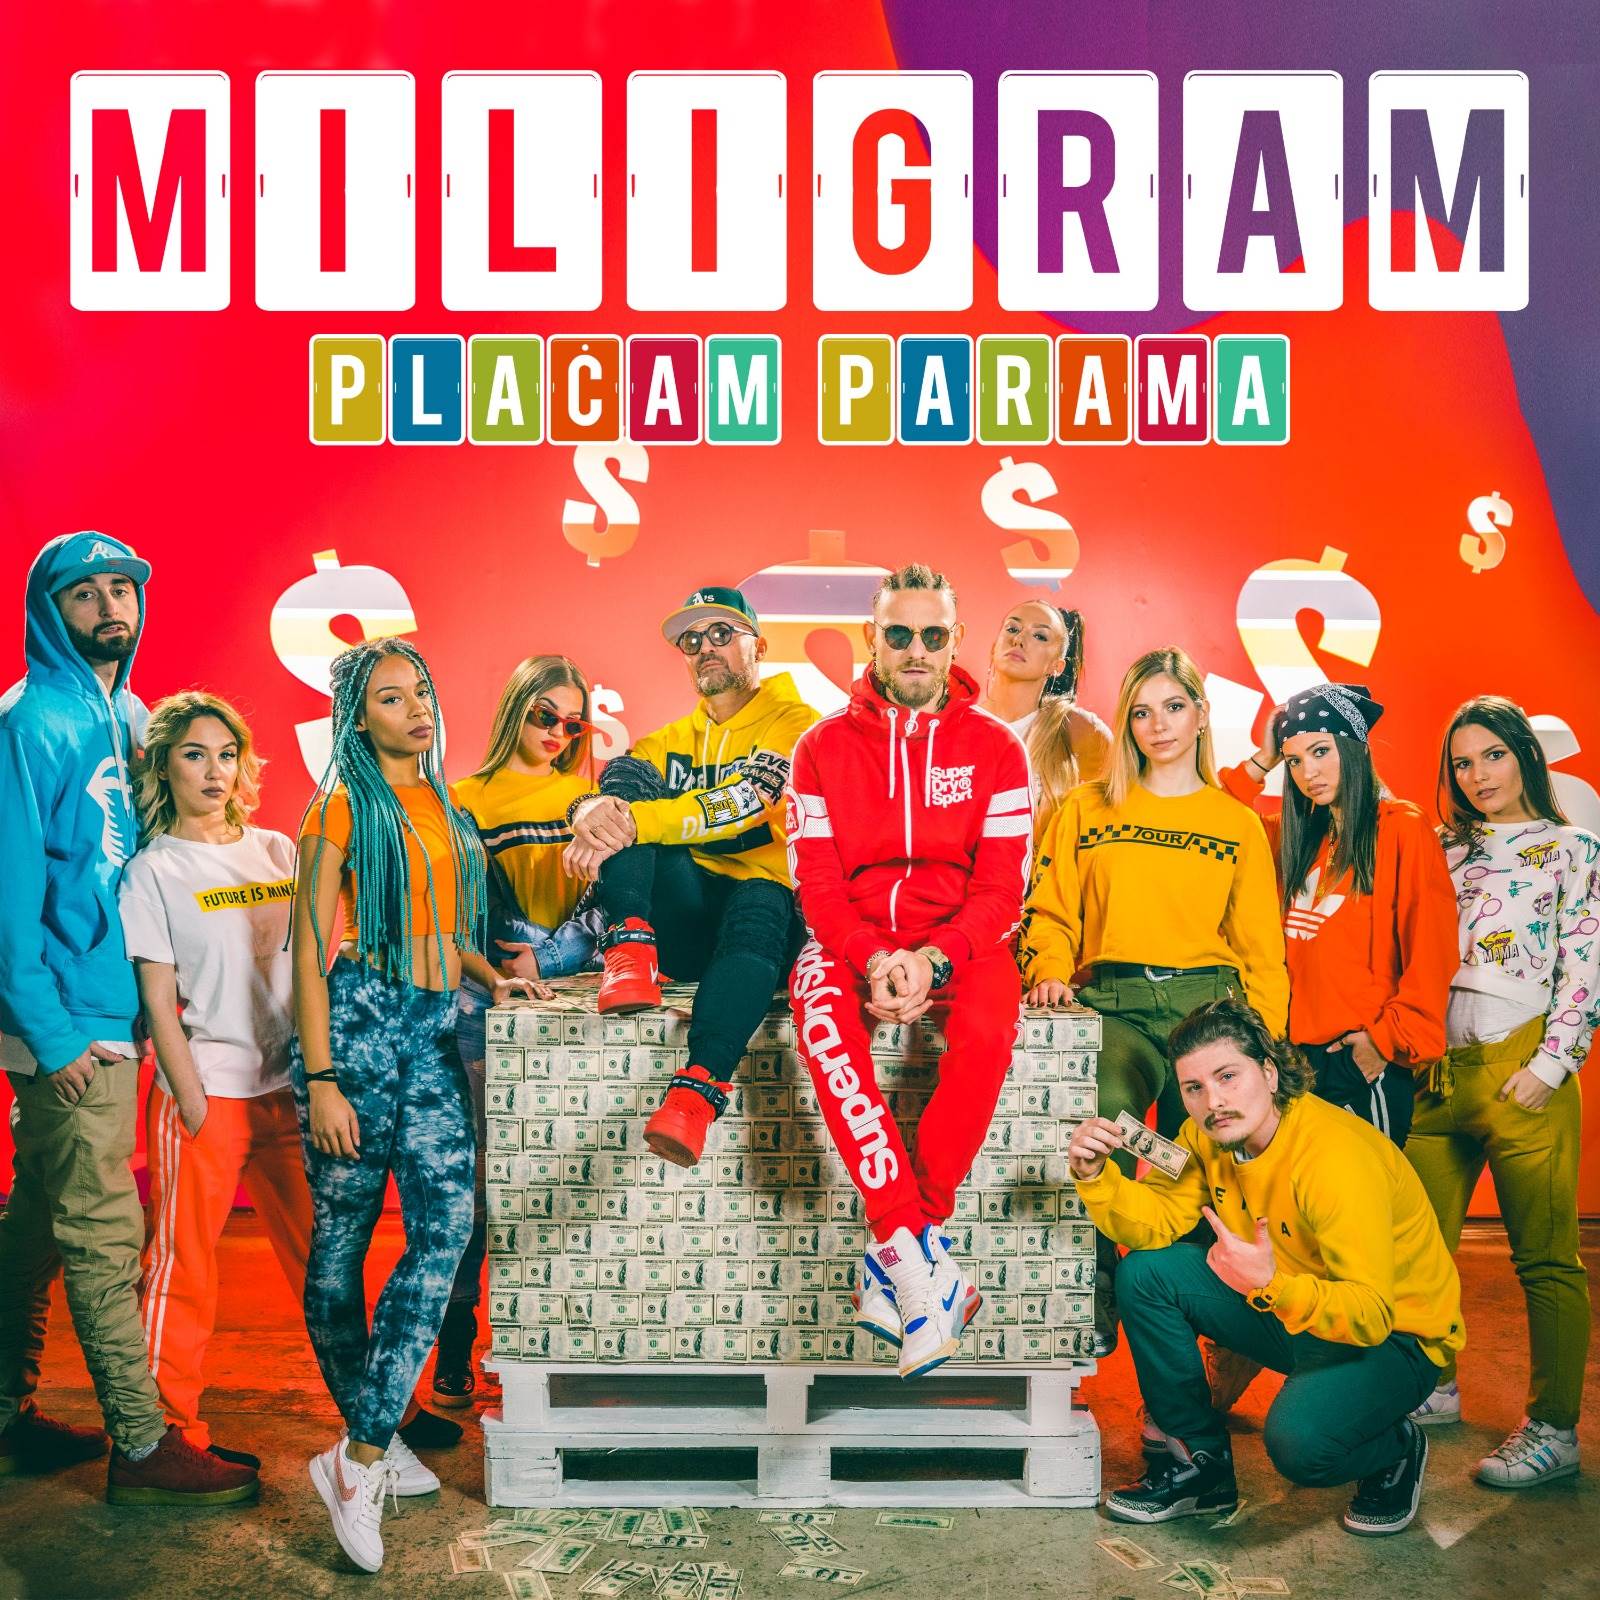  Placam-parama-nova-pjesma-Miligram 